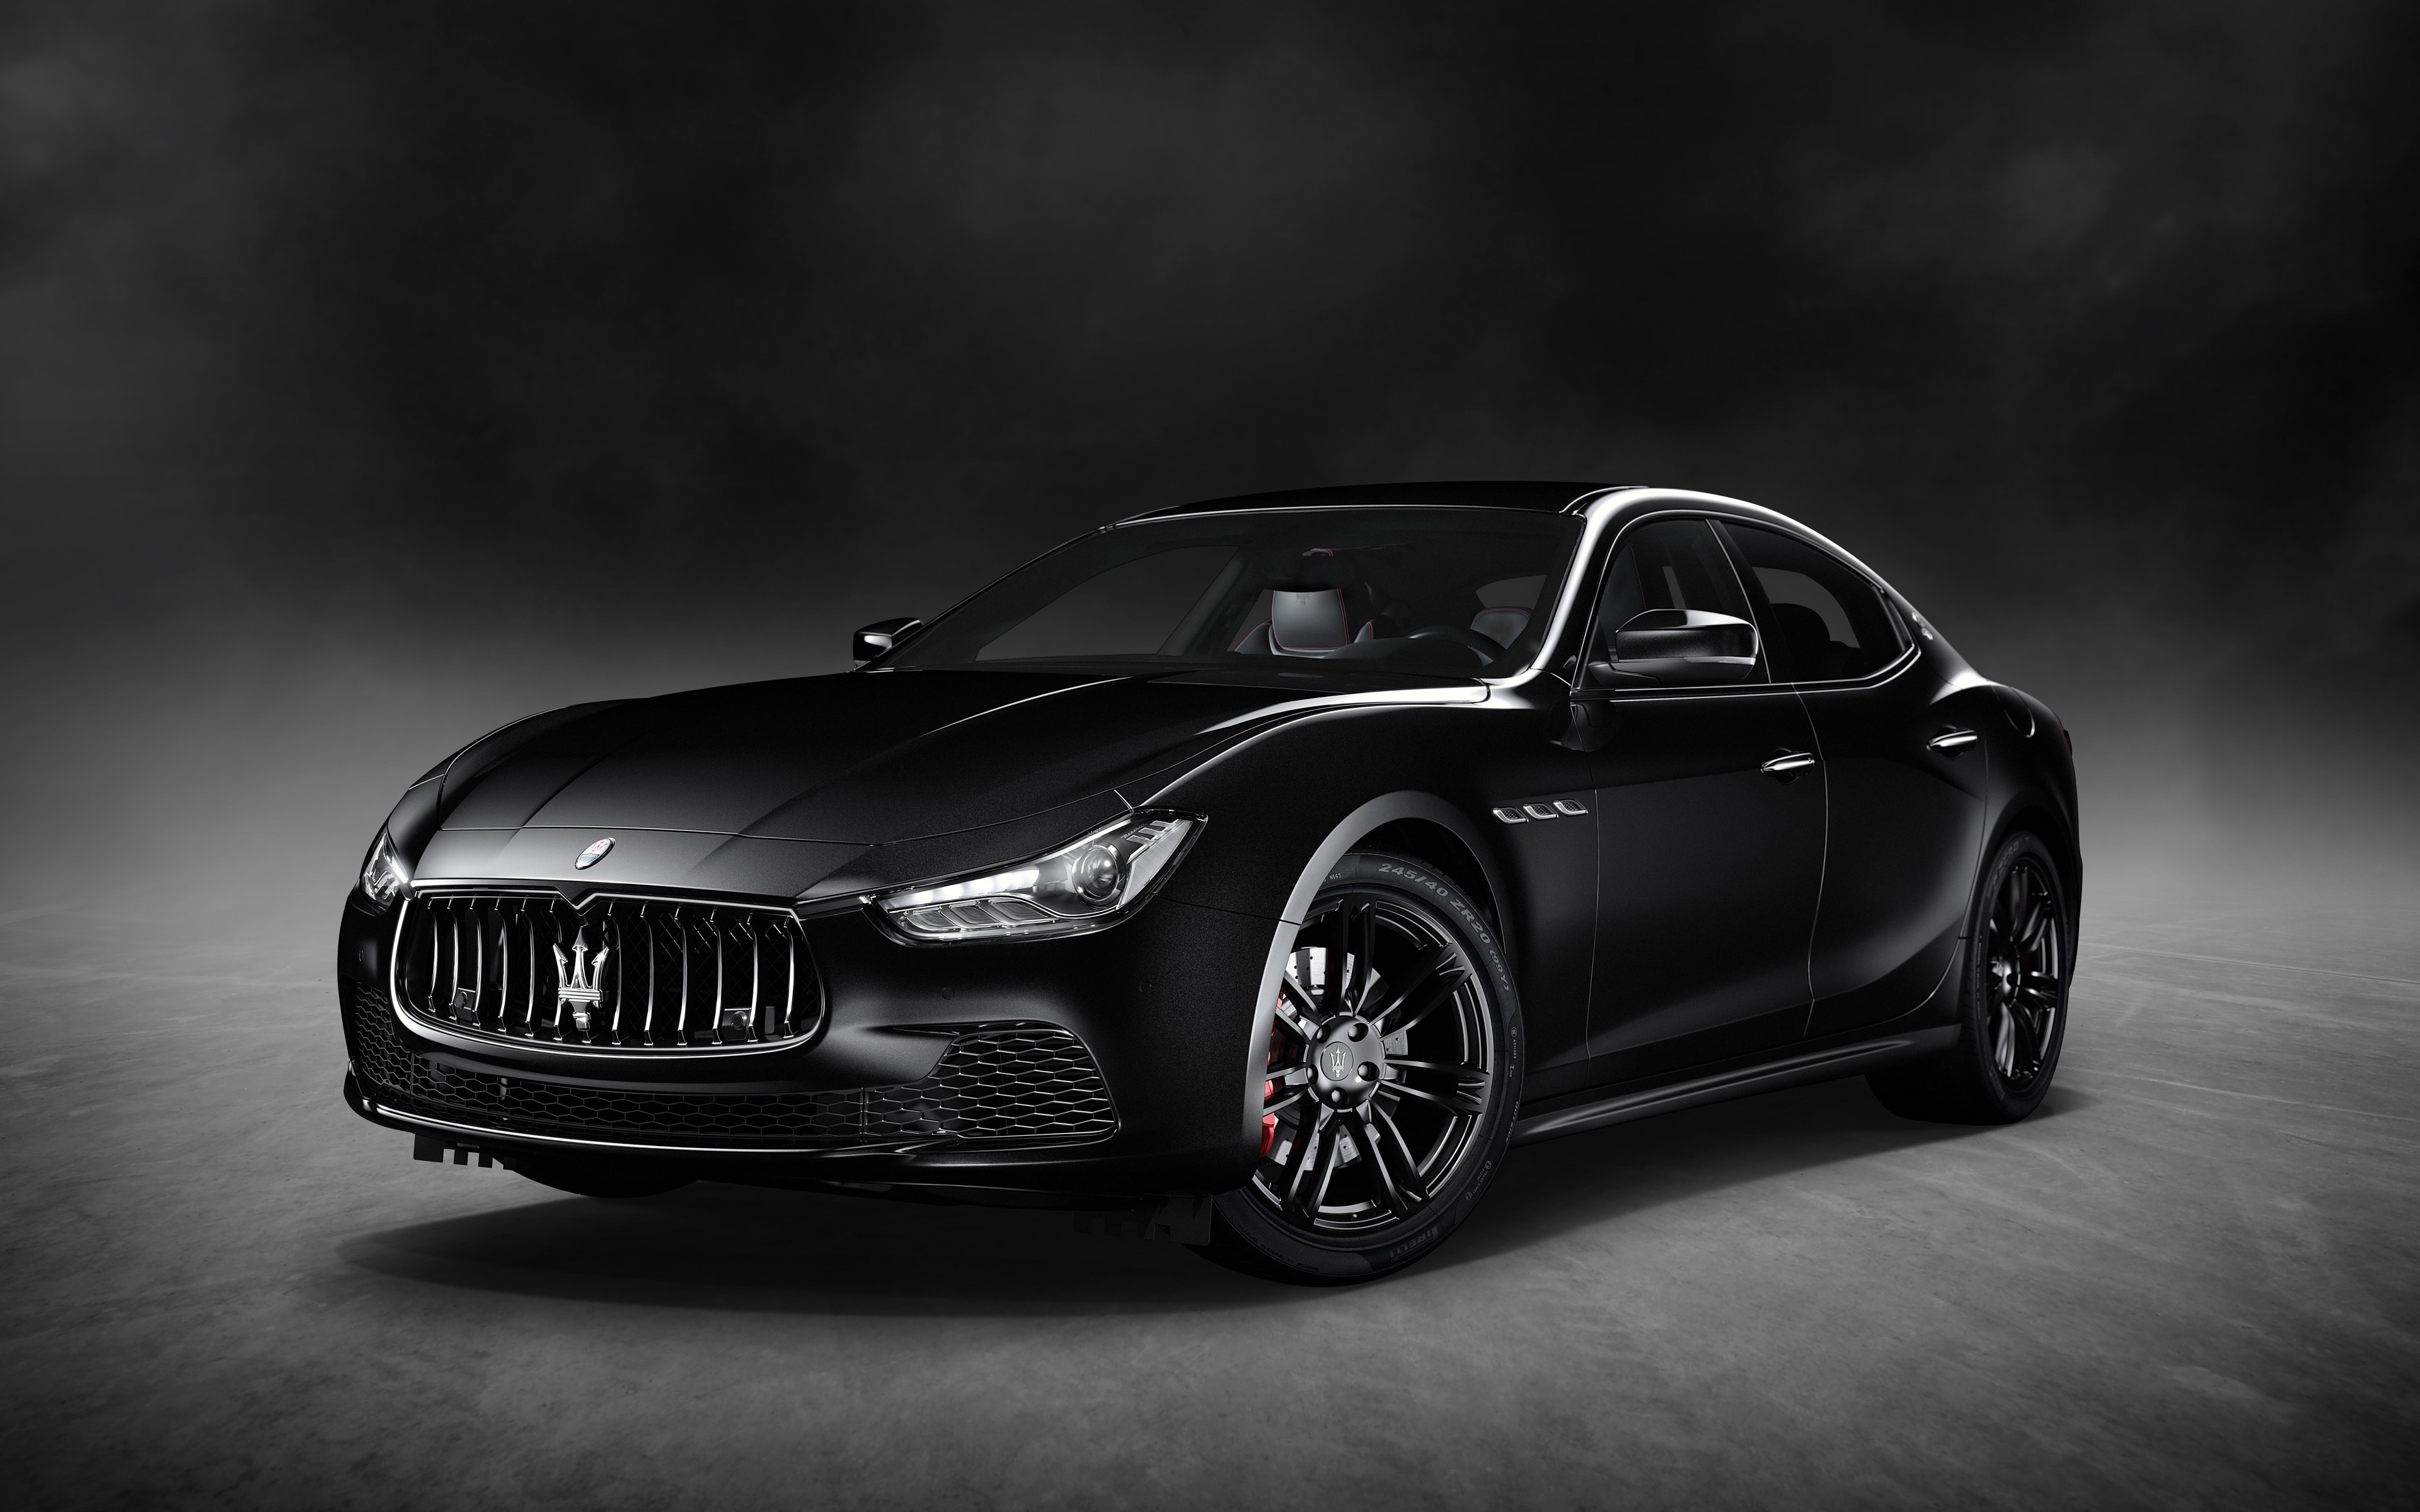 2018 Maserati Ghibli Black - HD Wallpaper 